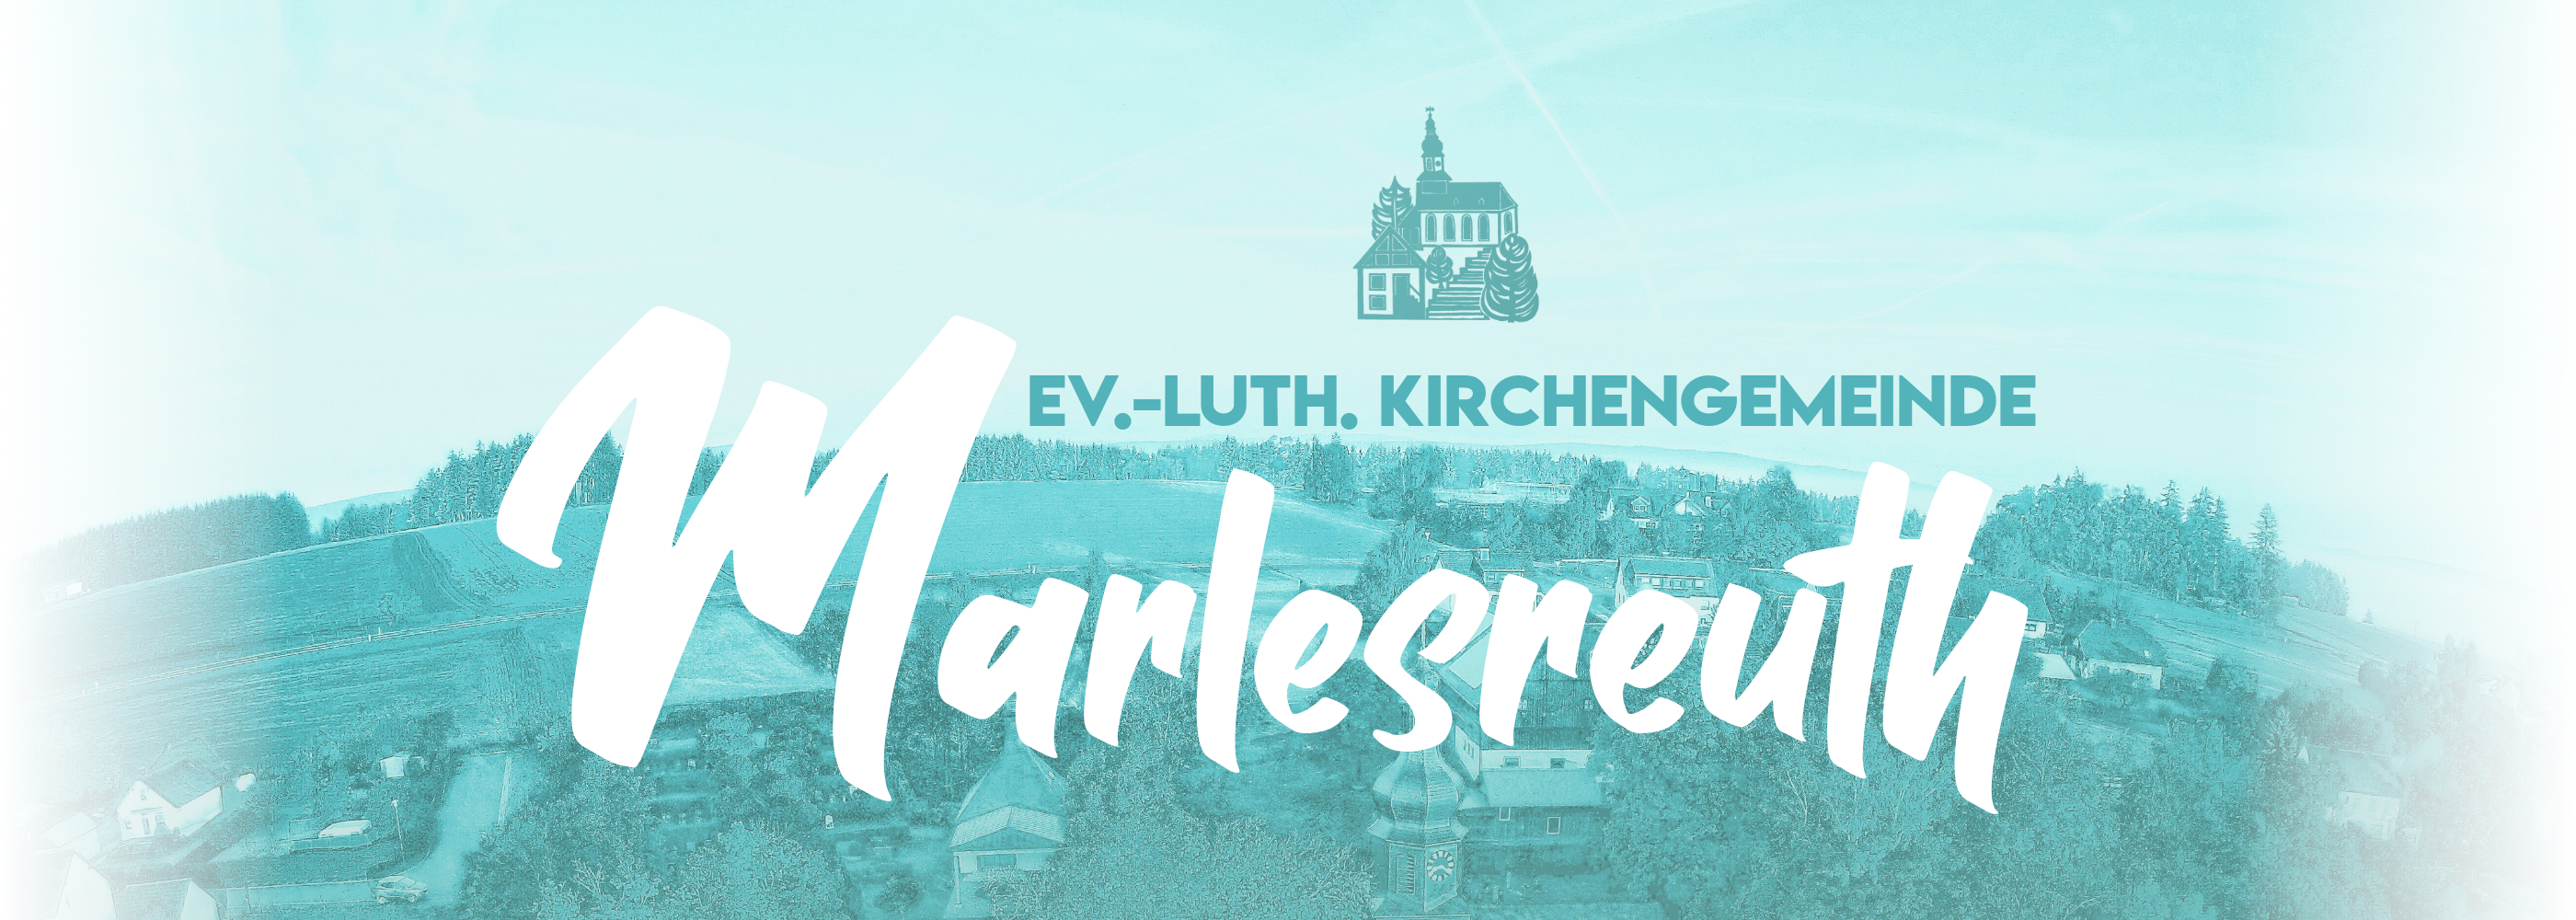 Jesus liebt Marlesreuth